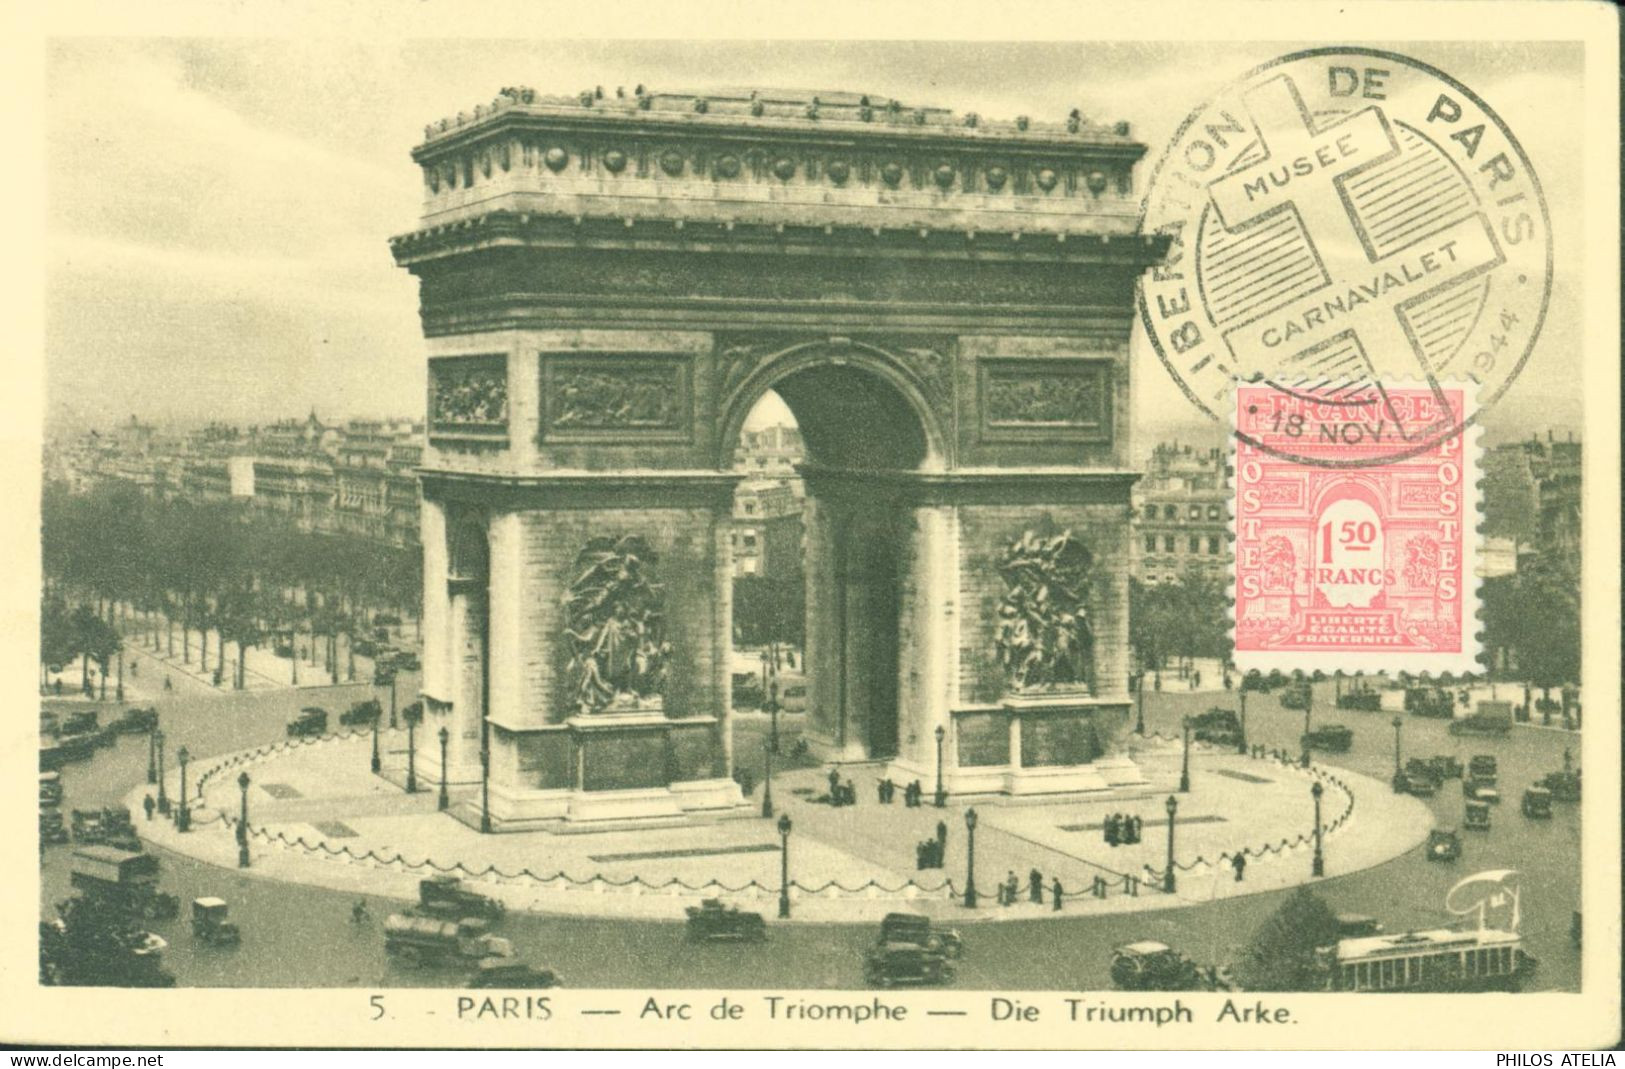 Guerre 40 CM Carte Maximum Arc De Triomphe YT N°625 CAD Illustré Libération De Paris Musée Carnavalet 18 NOV 44 - WW II